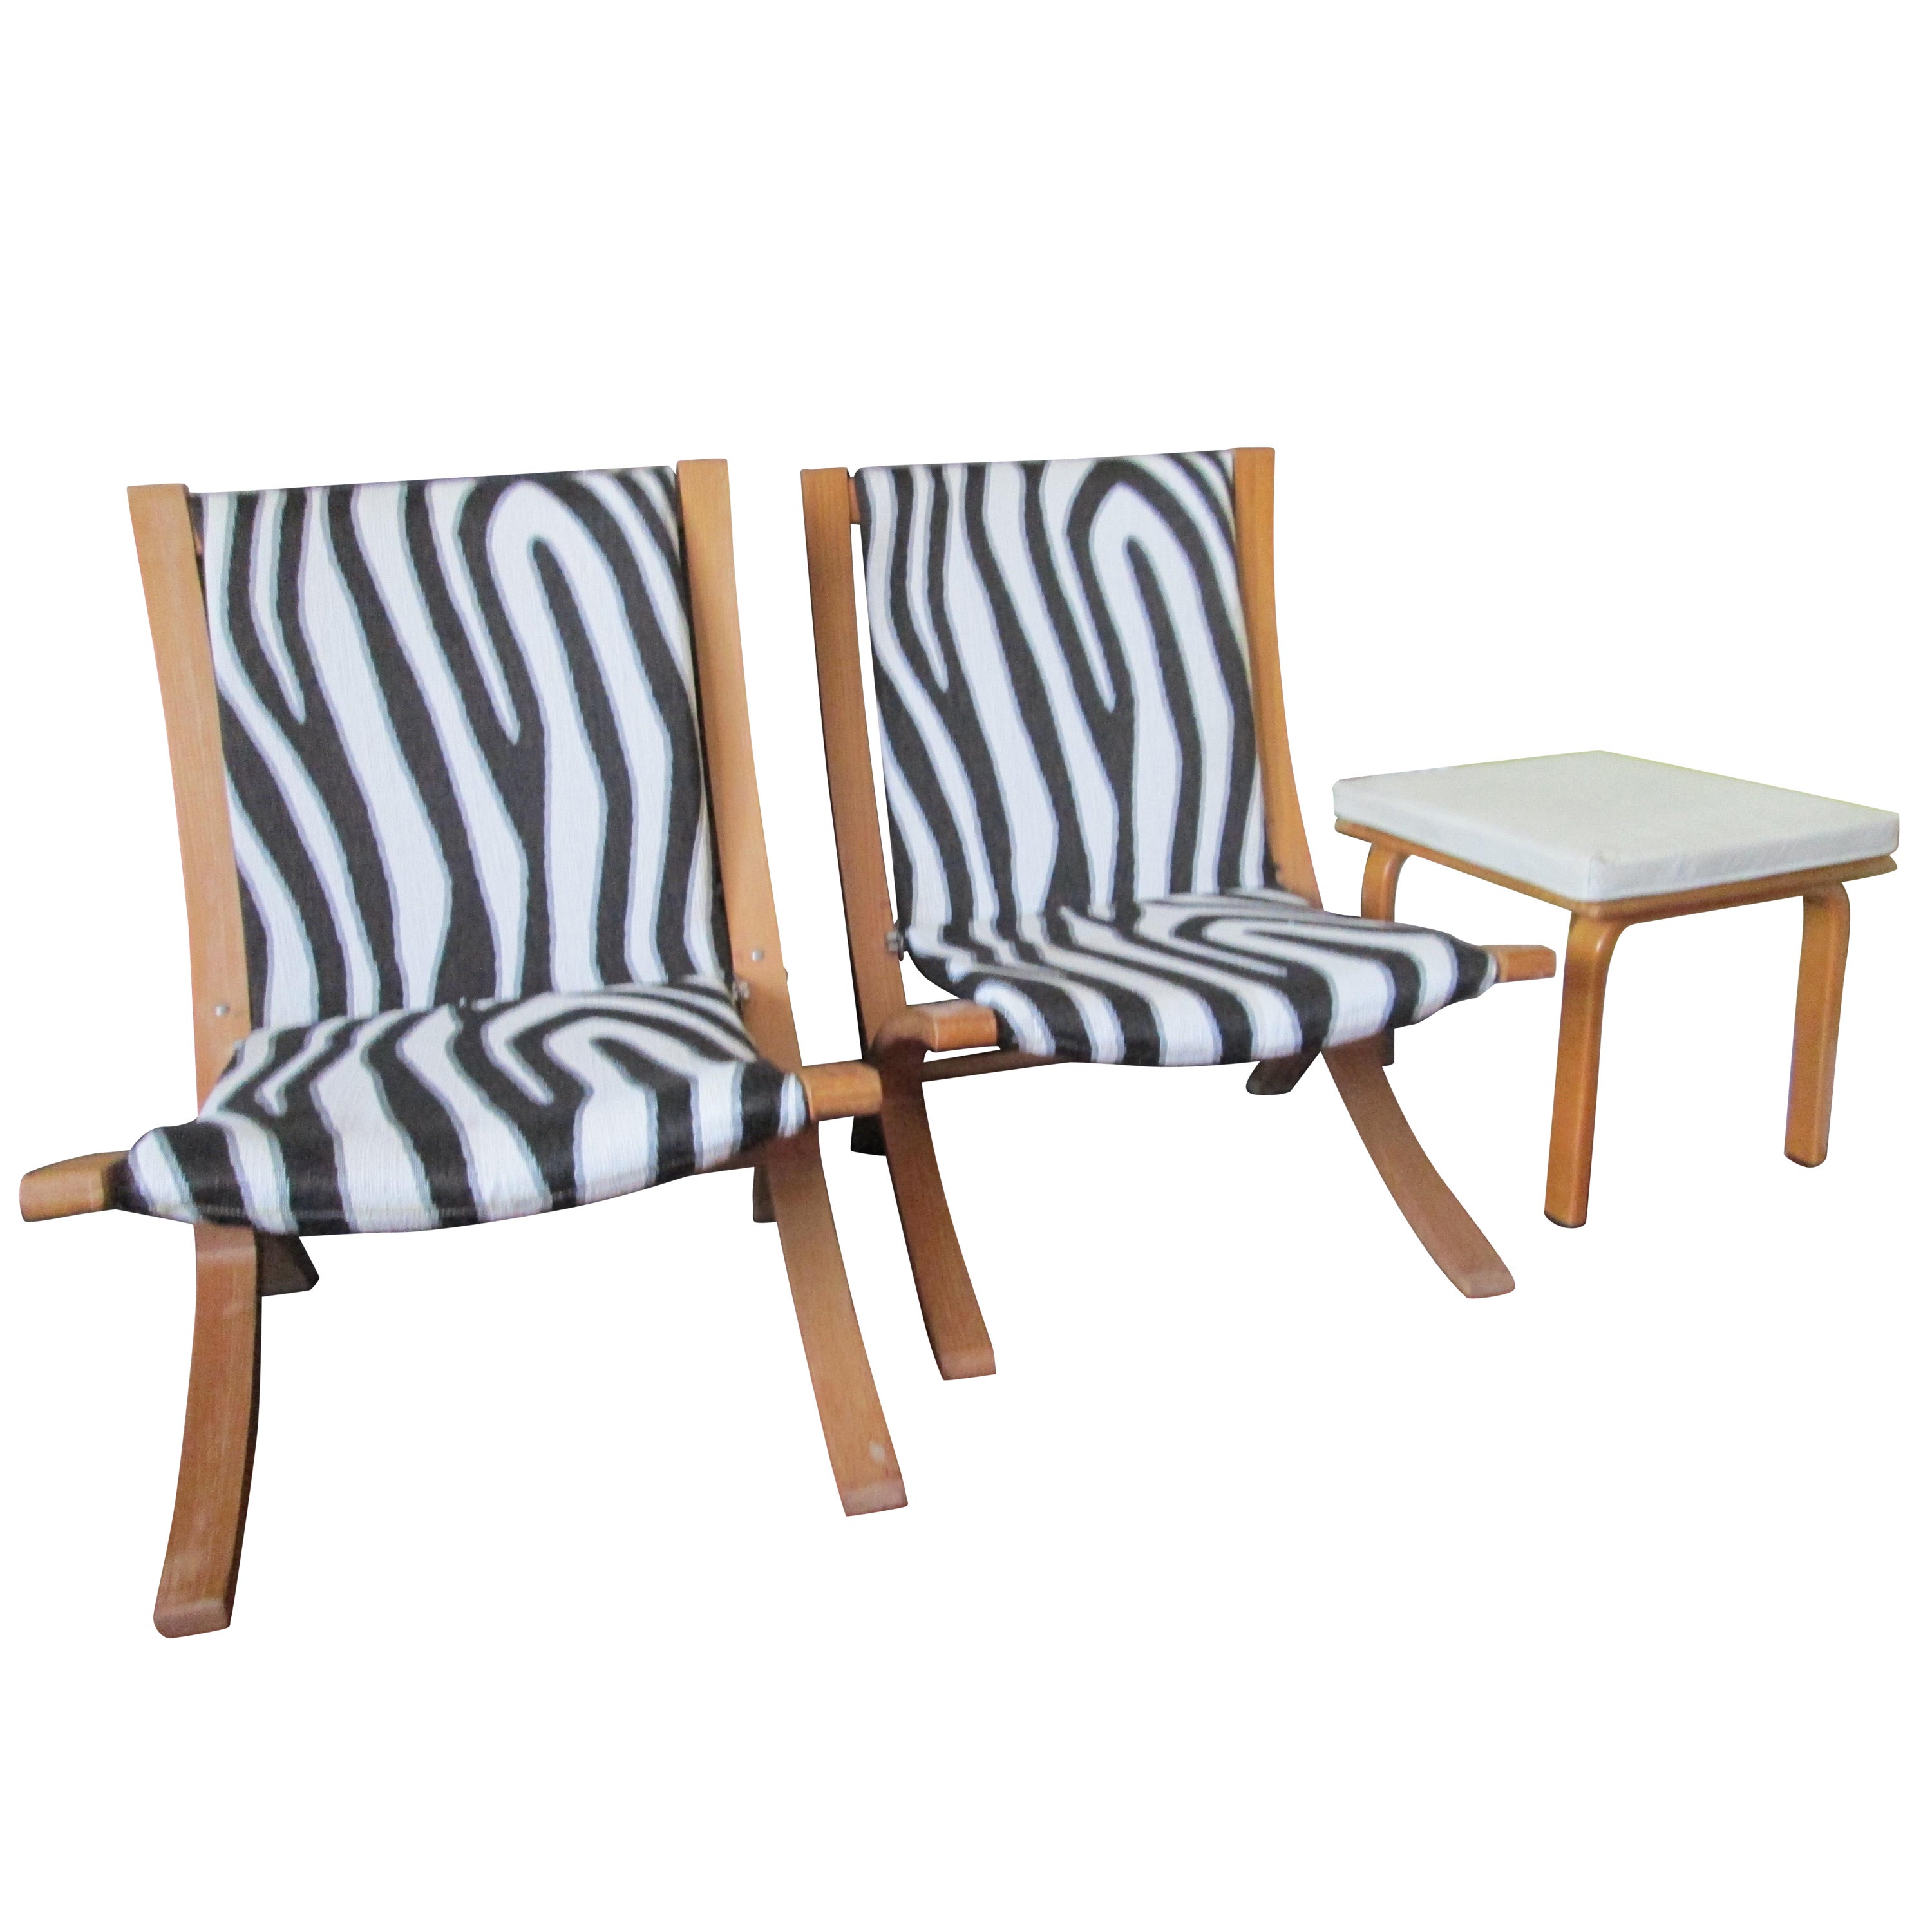 Paire de chaises à ciseaux de style Thonet des années 1950, table des années 1920 marquée Thonet